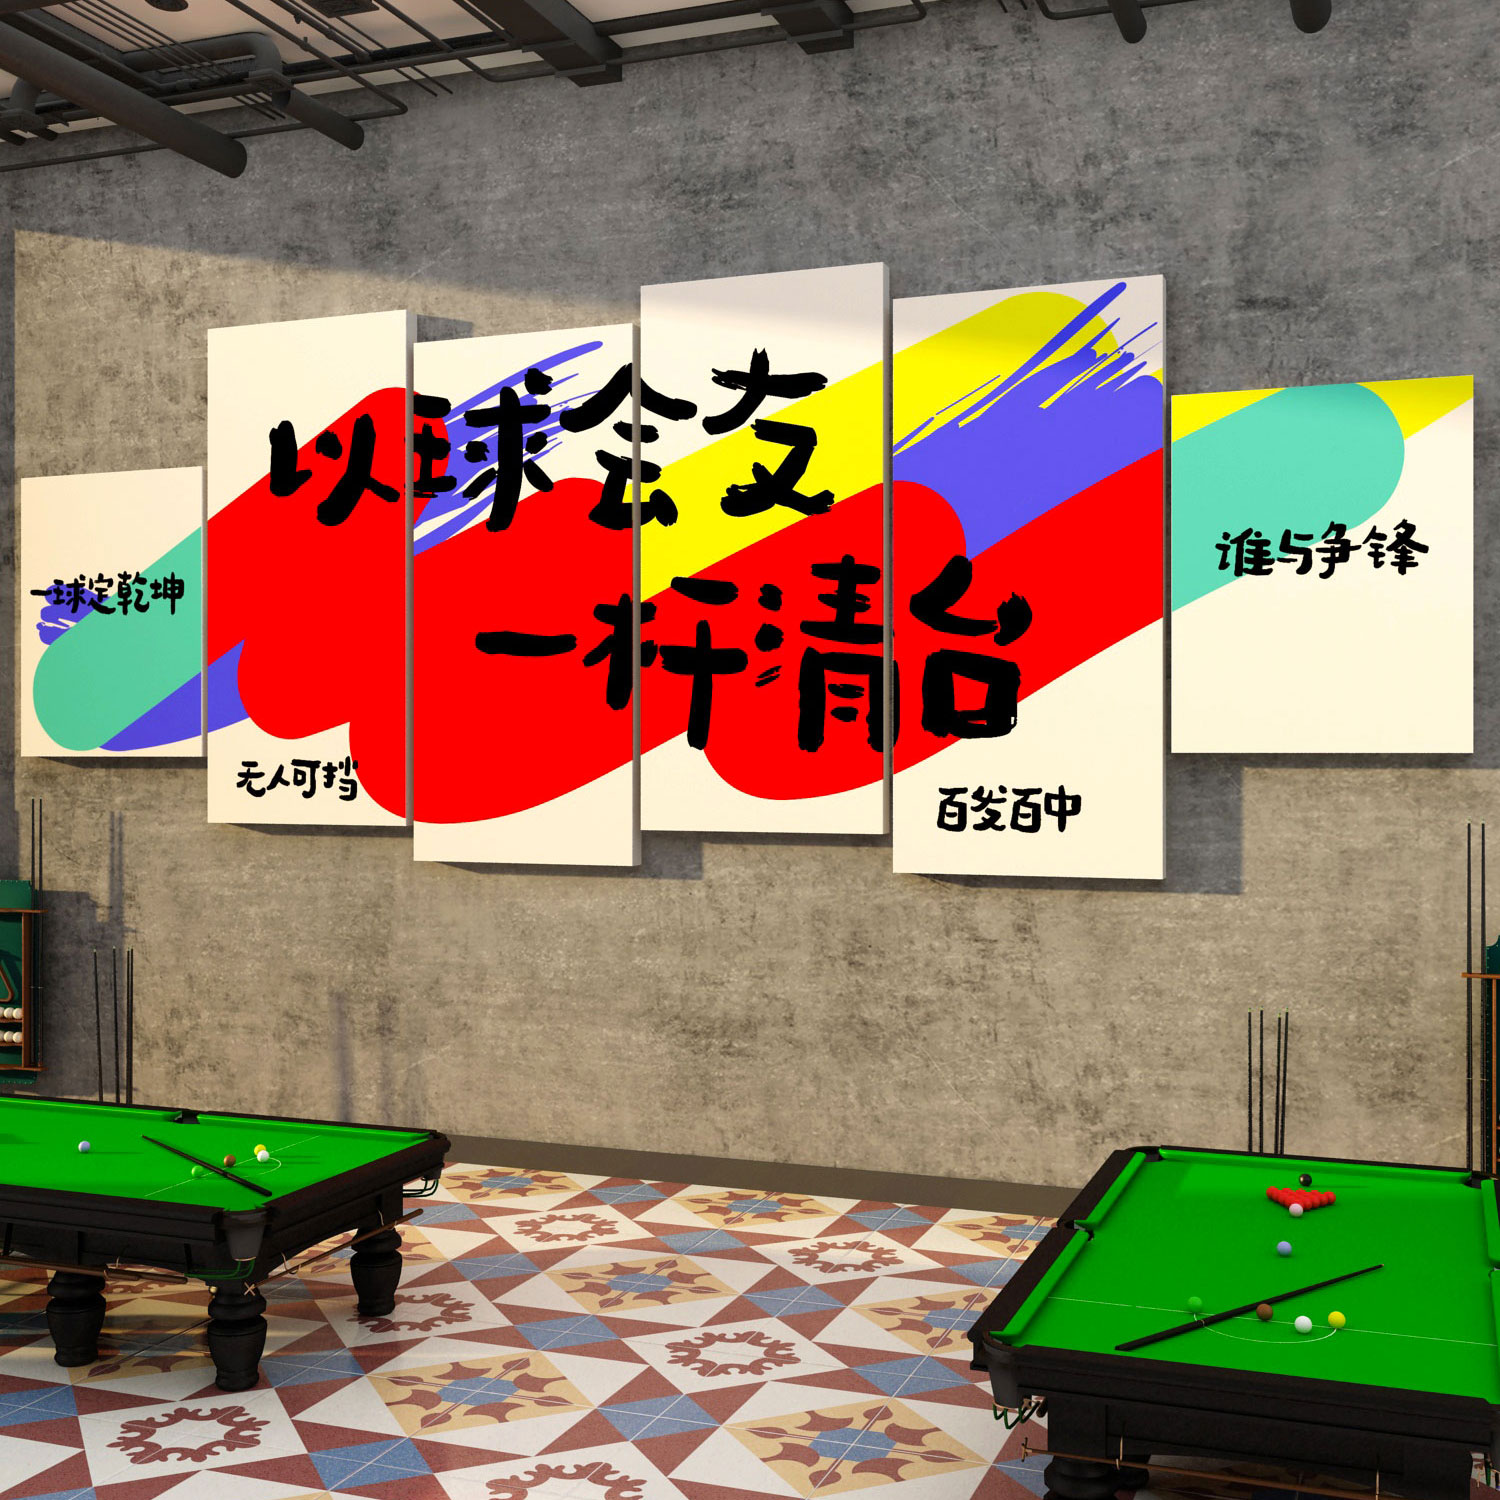 台球厅装修饰用品大全网红桌球室墙面海报俱乐部背景文化创意挂画 - 图2